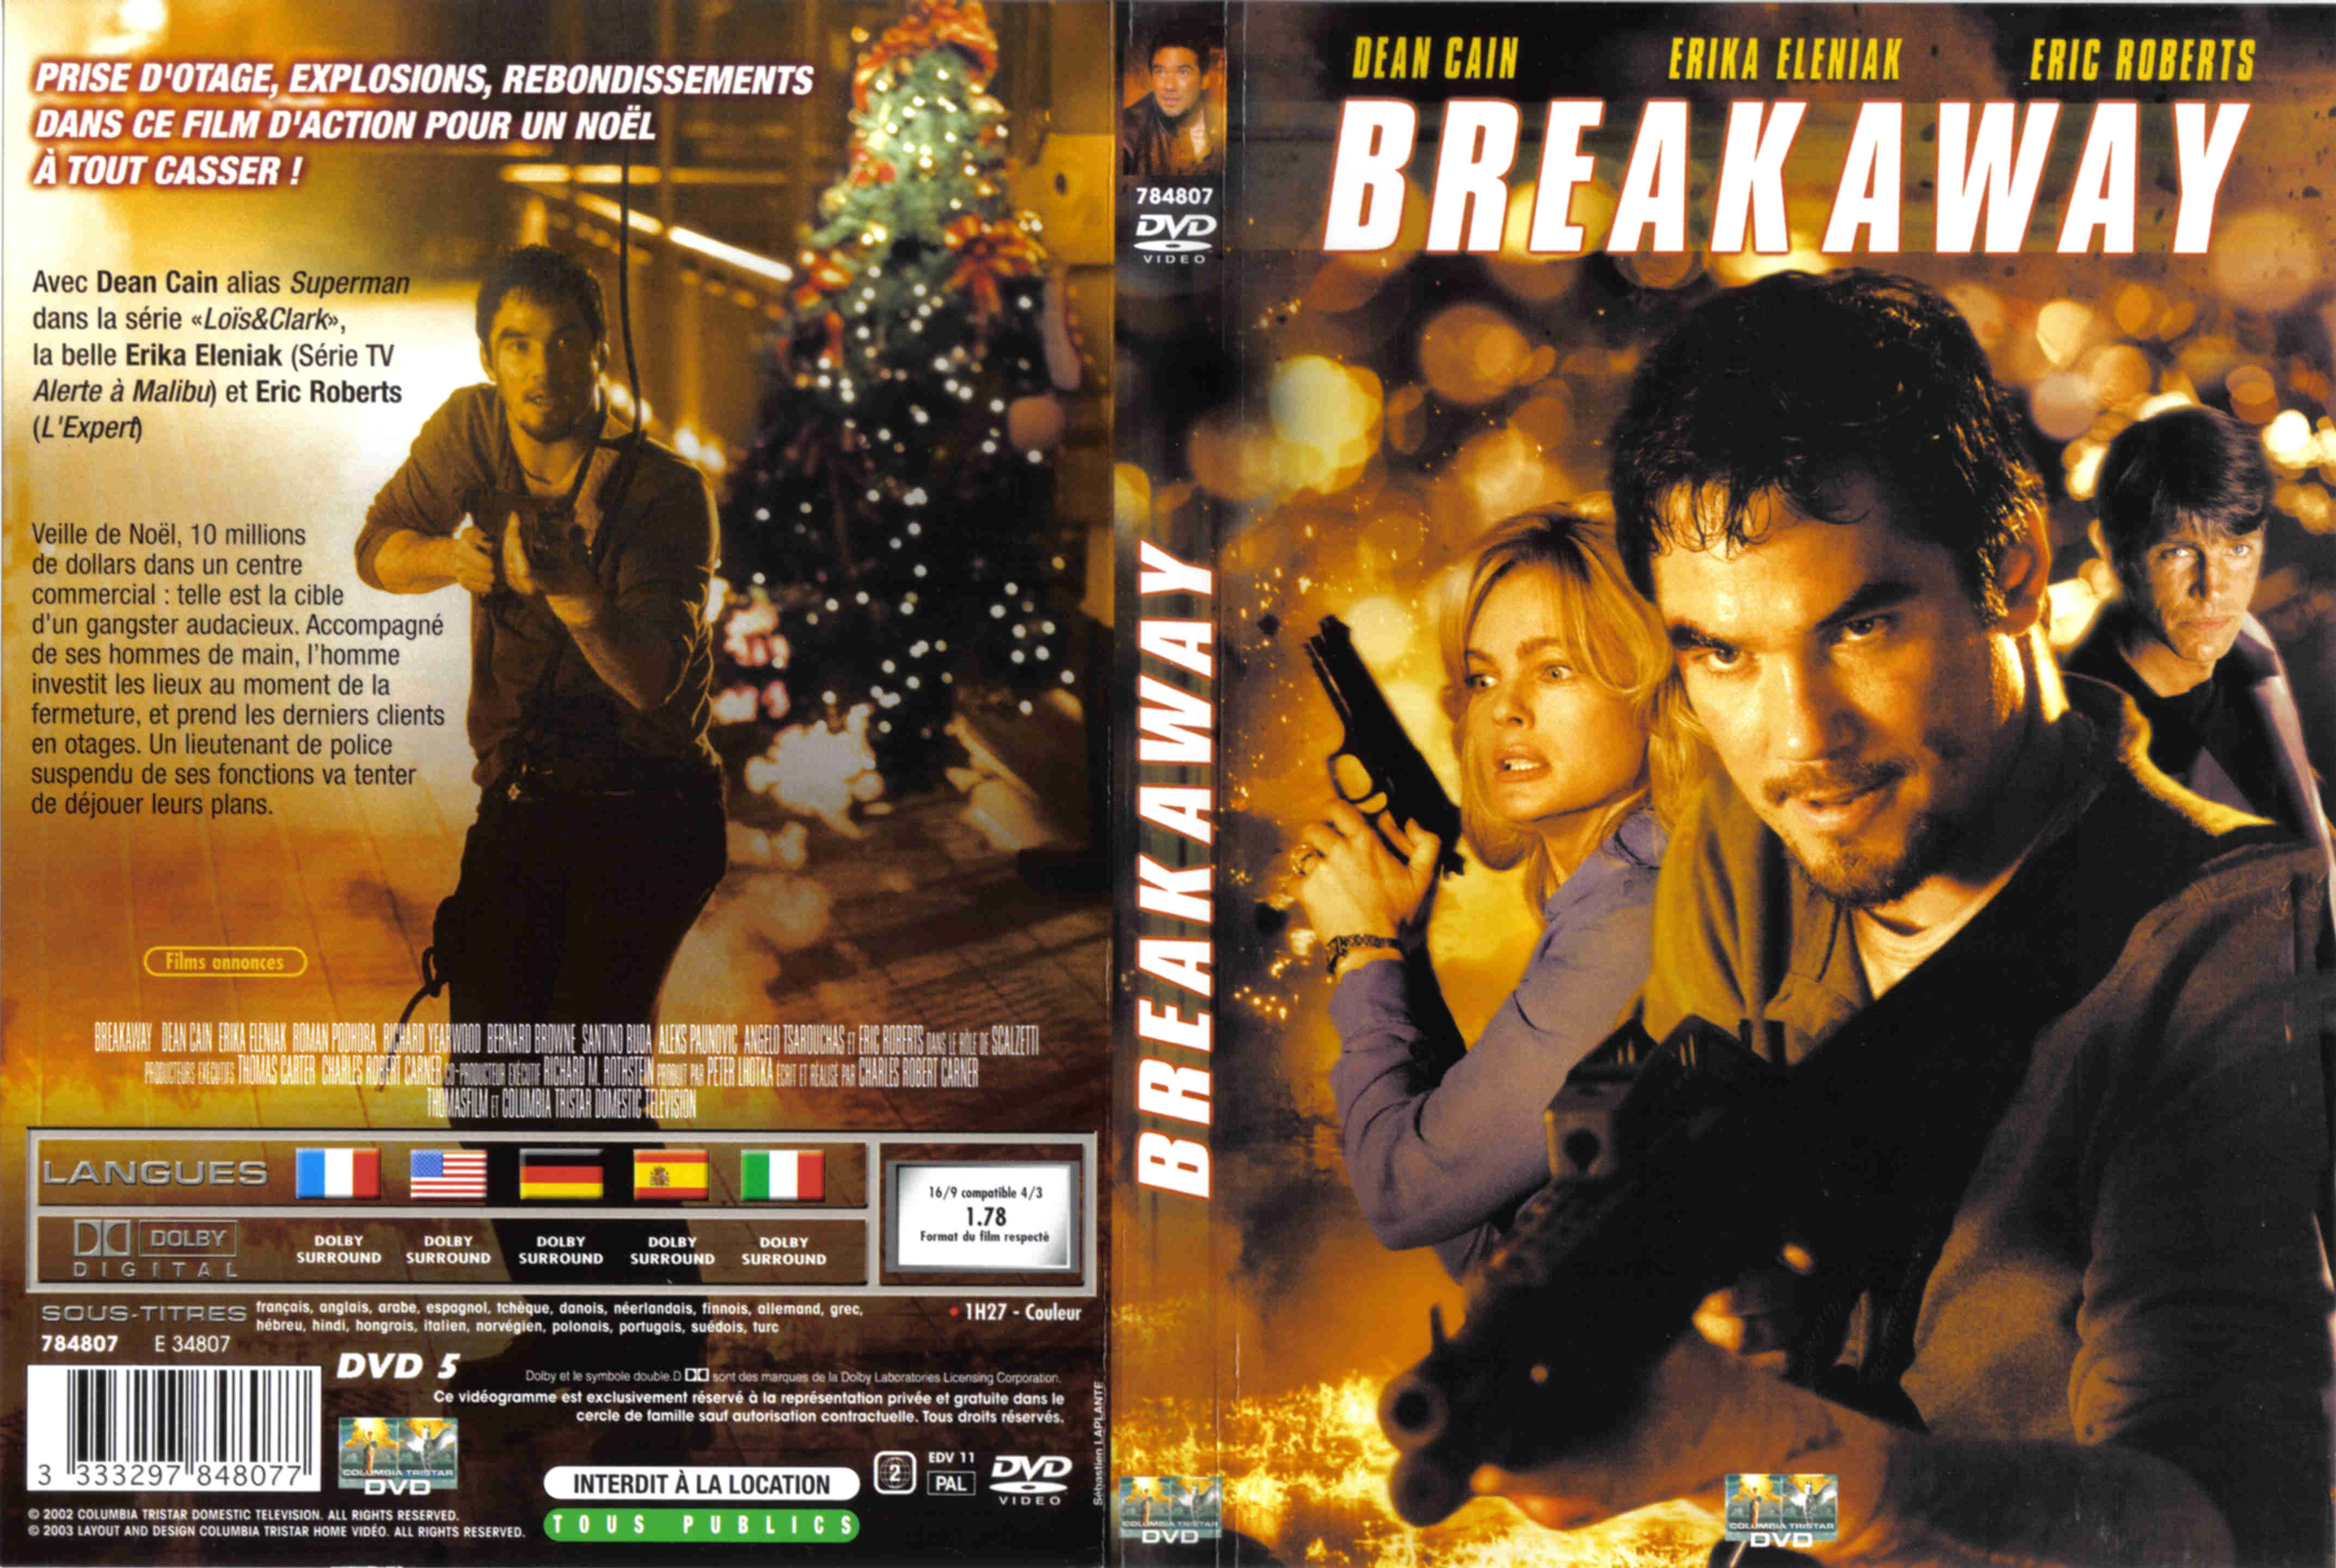 Jaquette DVD Breakaway